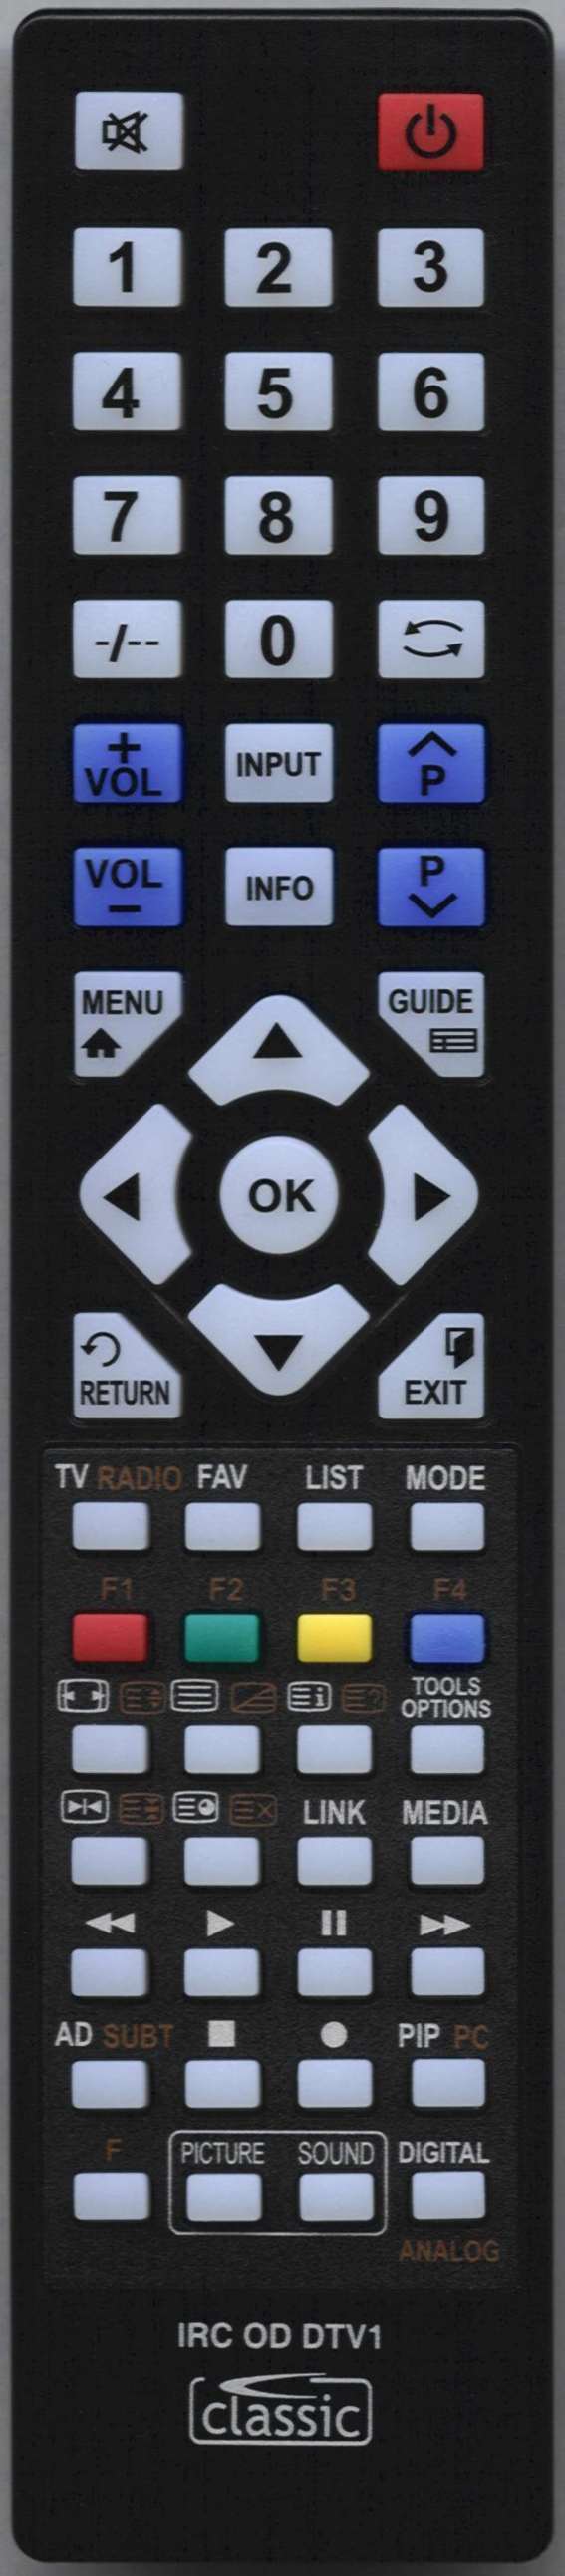 Kenmark LVD162 Remote Control